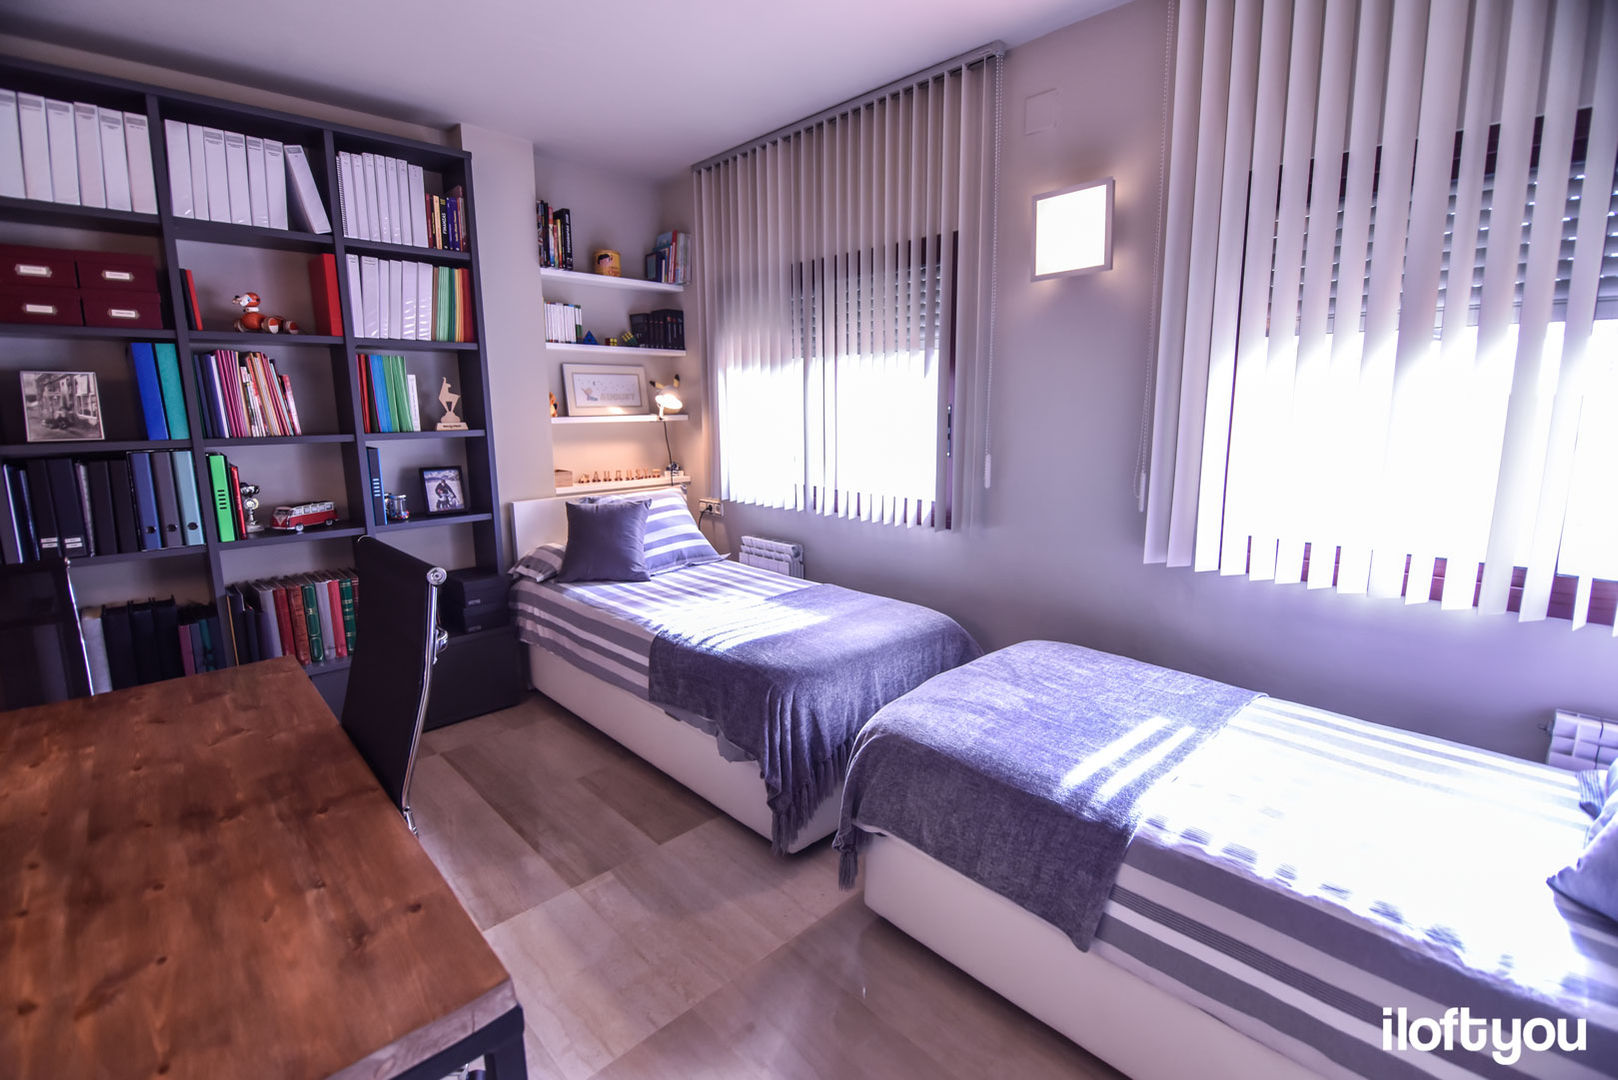 Dormitorio juvenil en Badalona, iloftyou iloftyou Camera da letto moderna